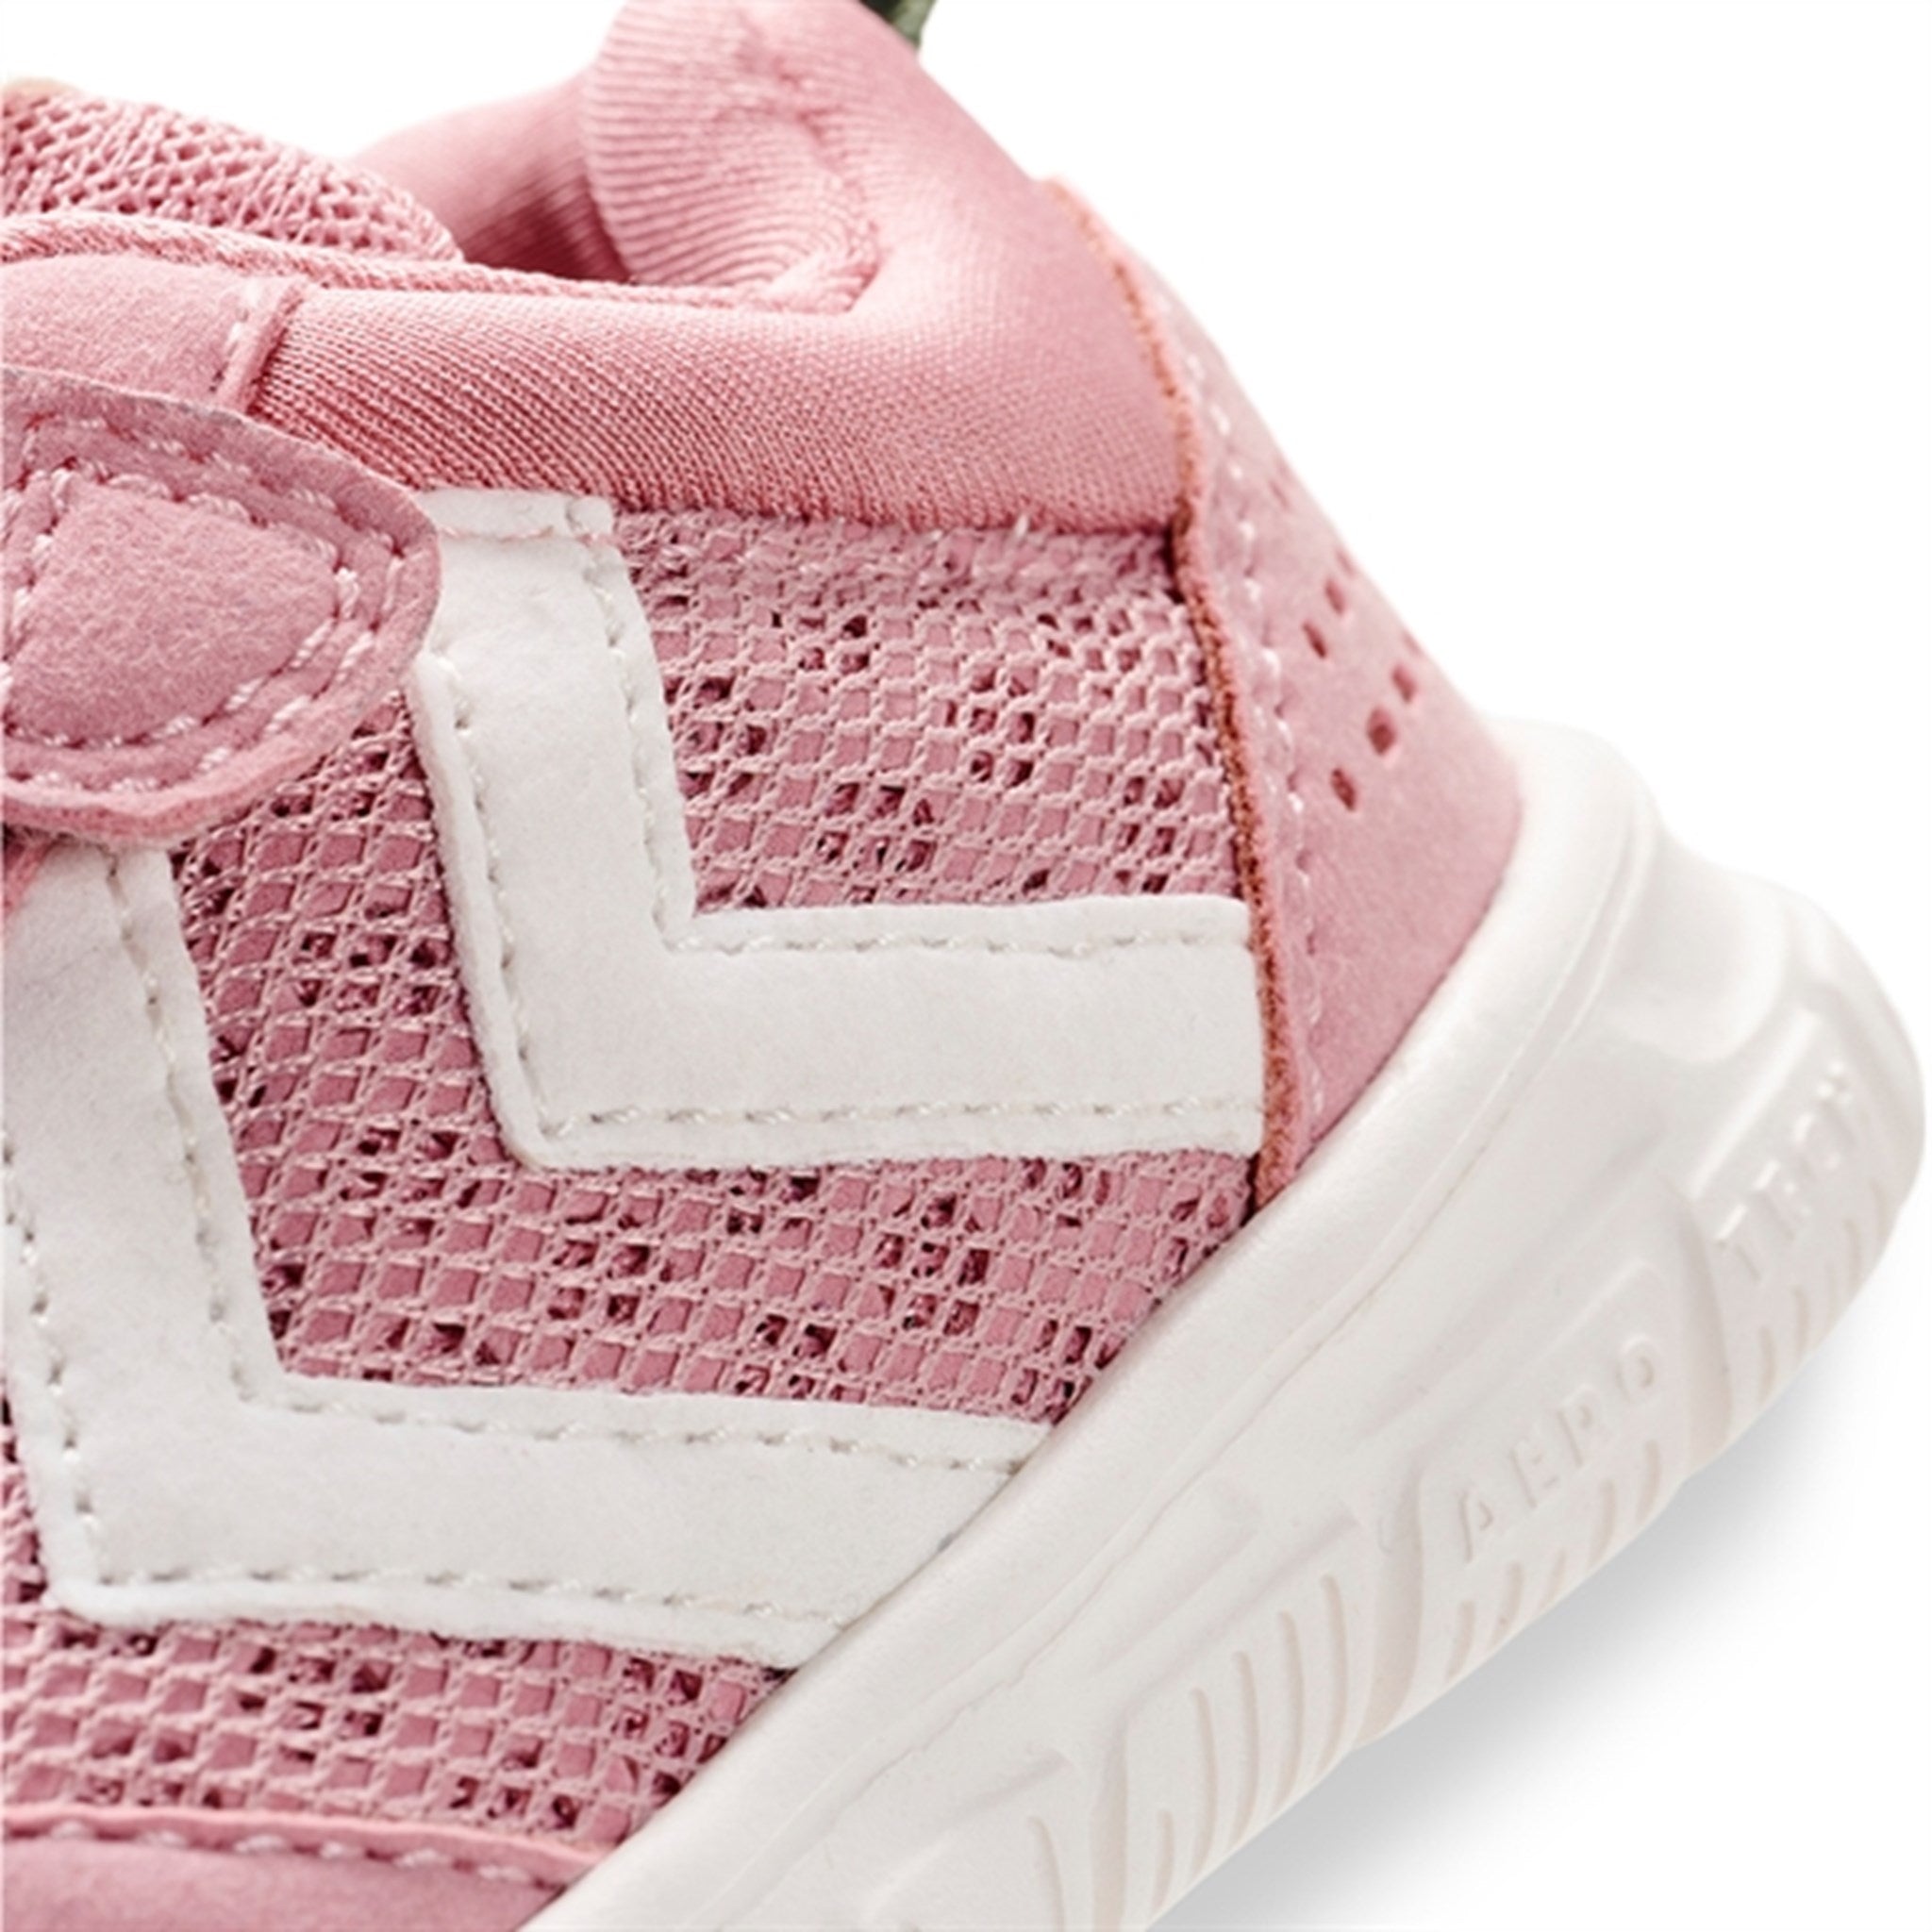 Hummel Crosslite Infant Sneakers Zephyr 6